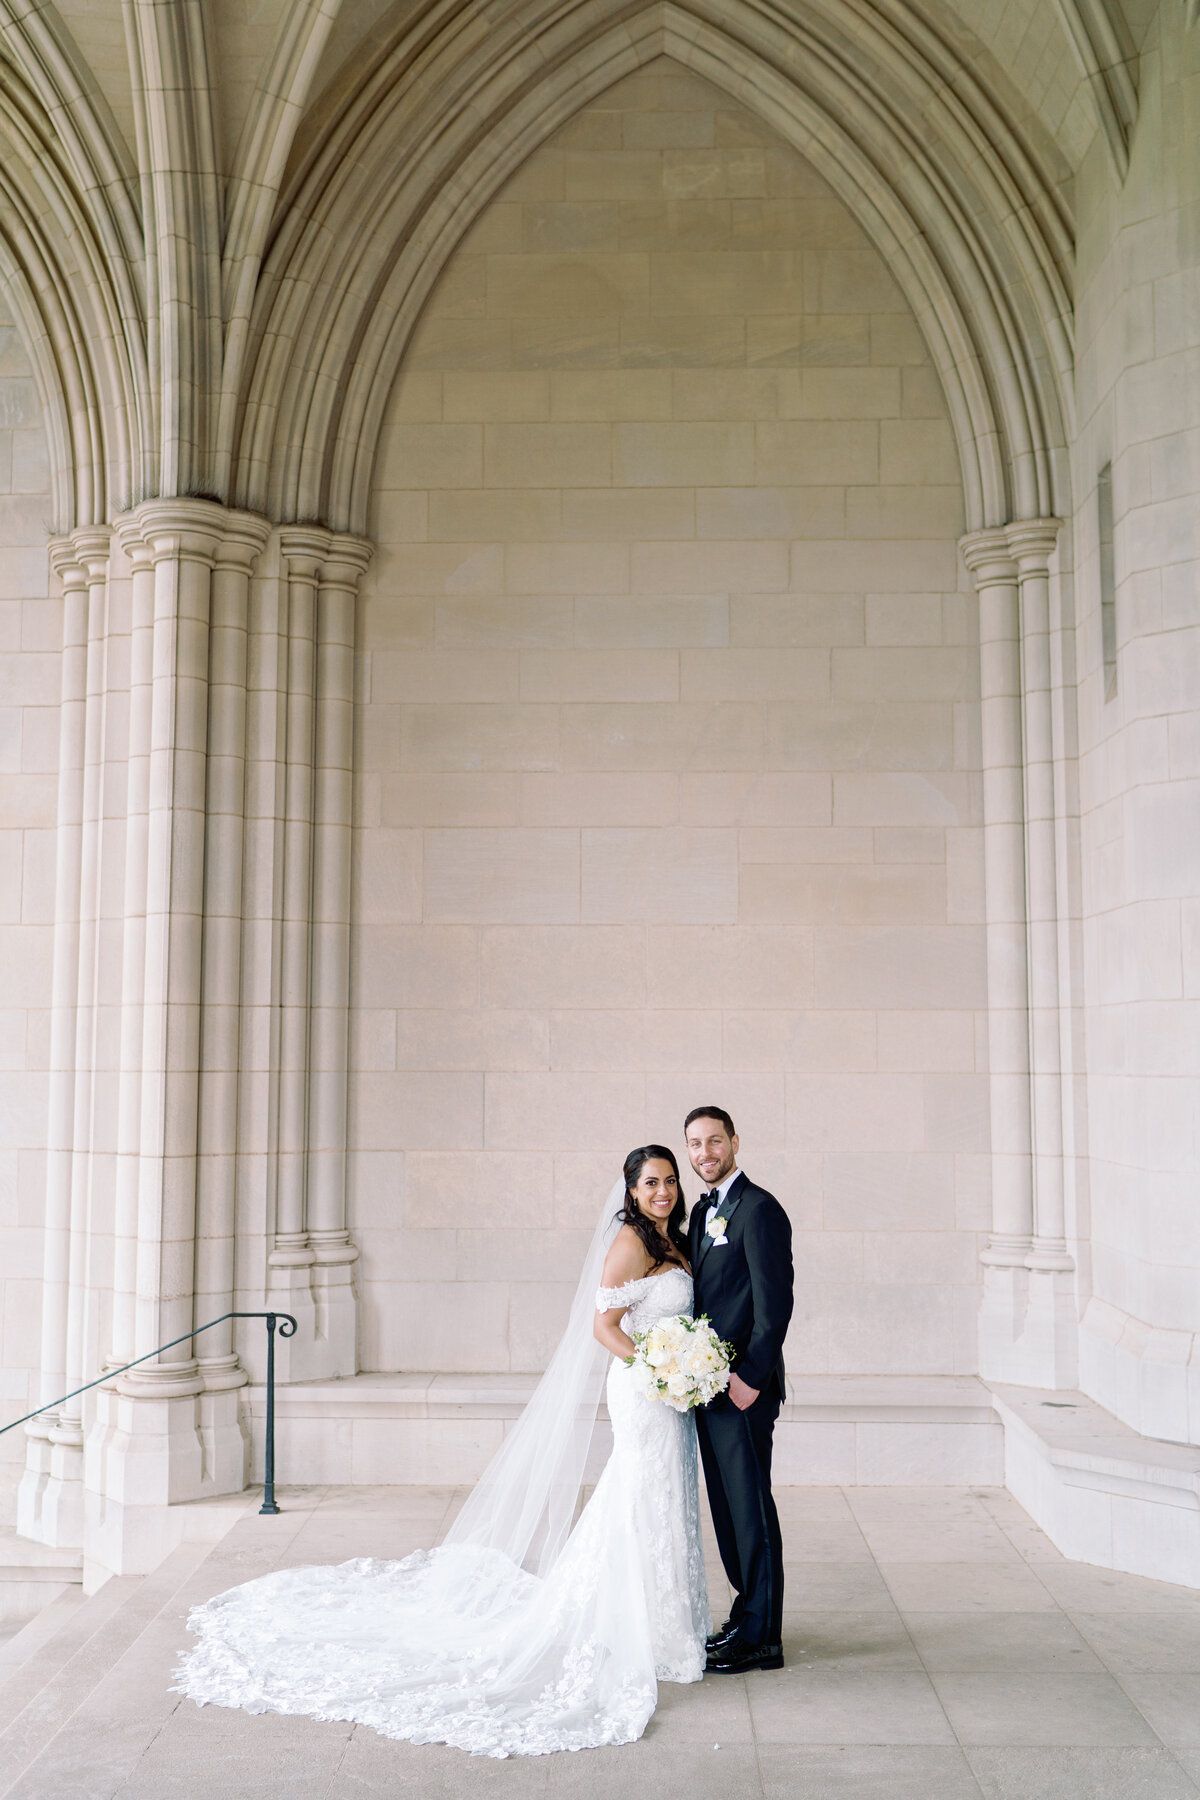 Klaire-Dixius-Photography-Salamander-DC-Washington-DC-wedding-national-cathedral-st-sophias-marios-suzy-bride-groom-35